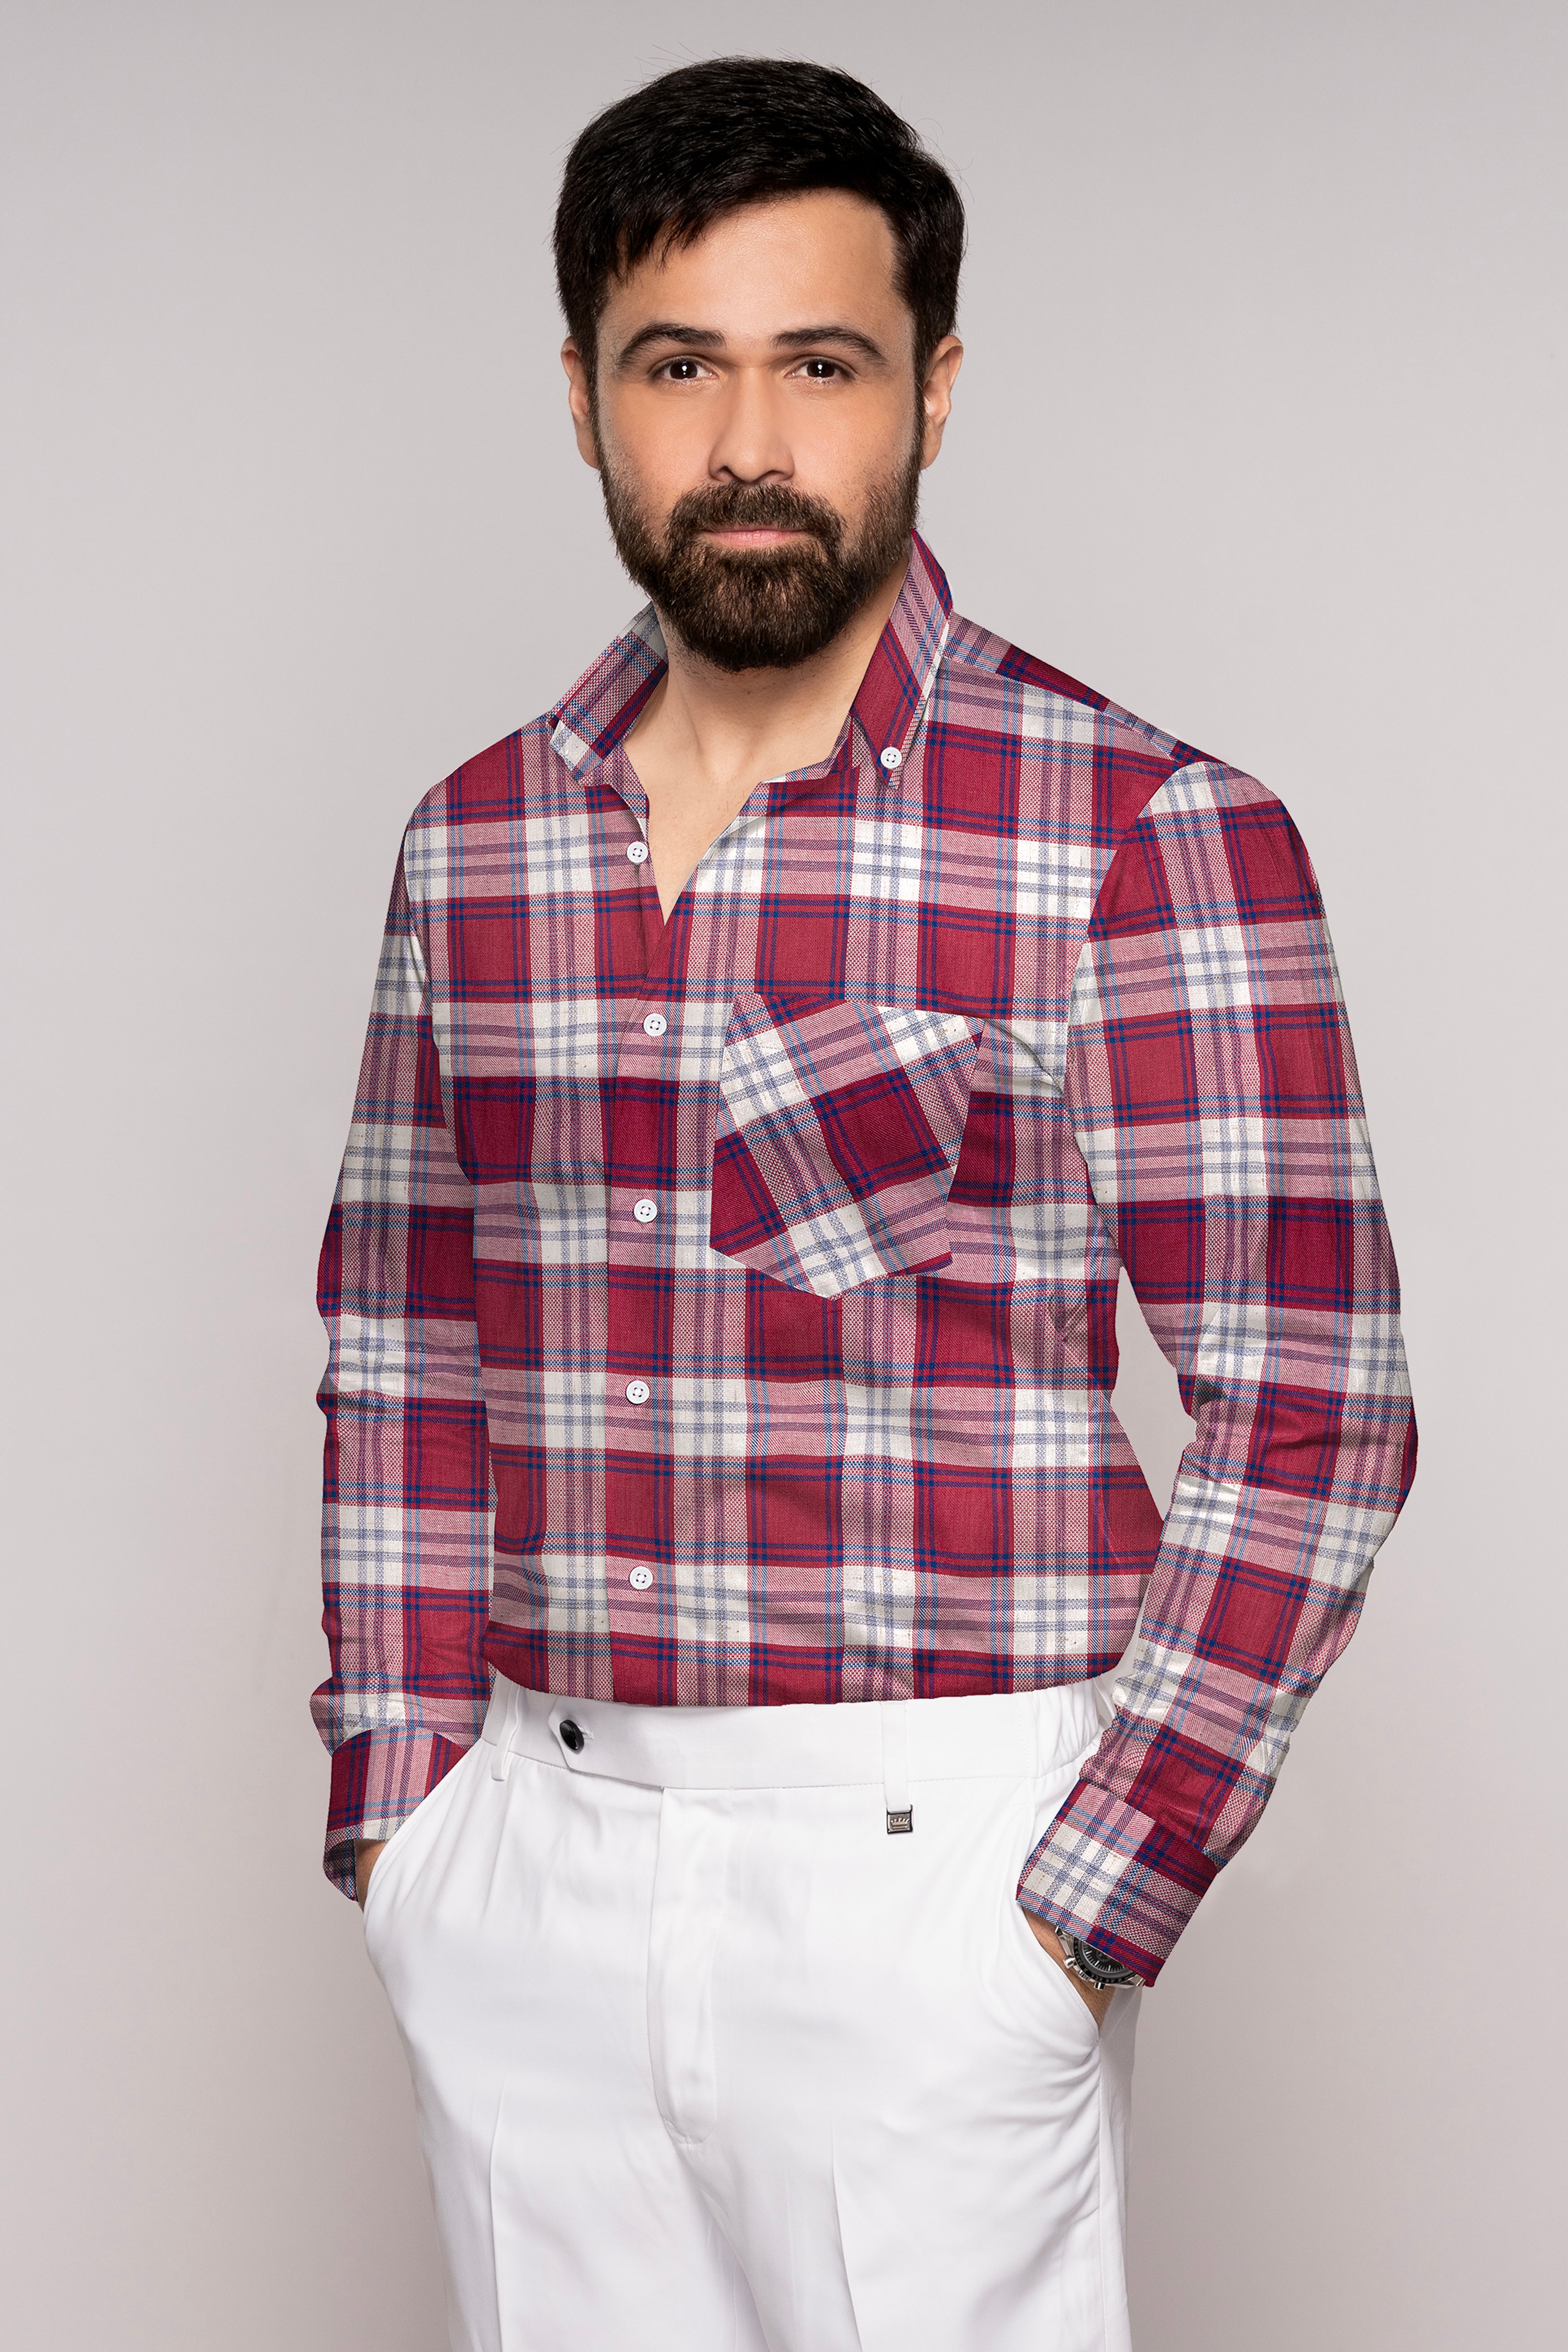 Shiraz Red and Pot Pourri Twill Plaid Premium Cotton Shirt